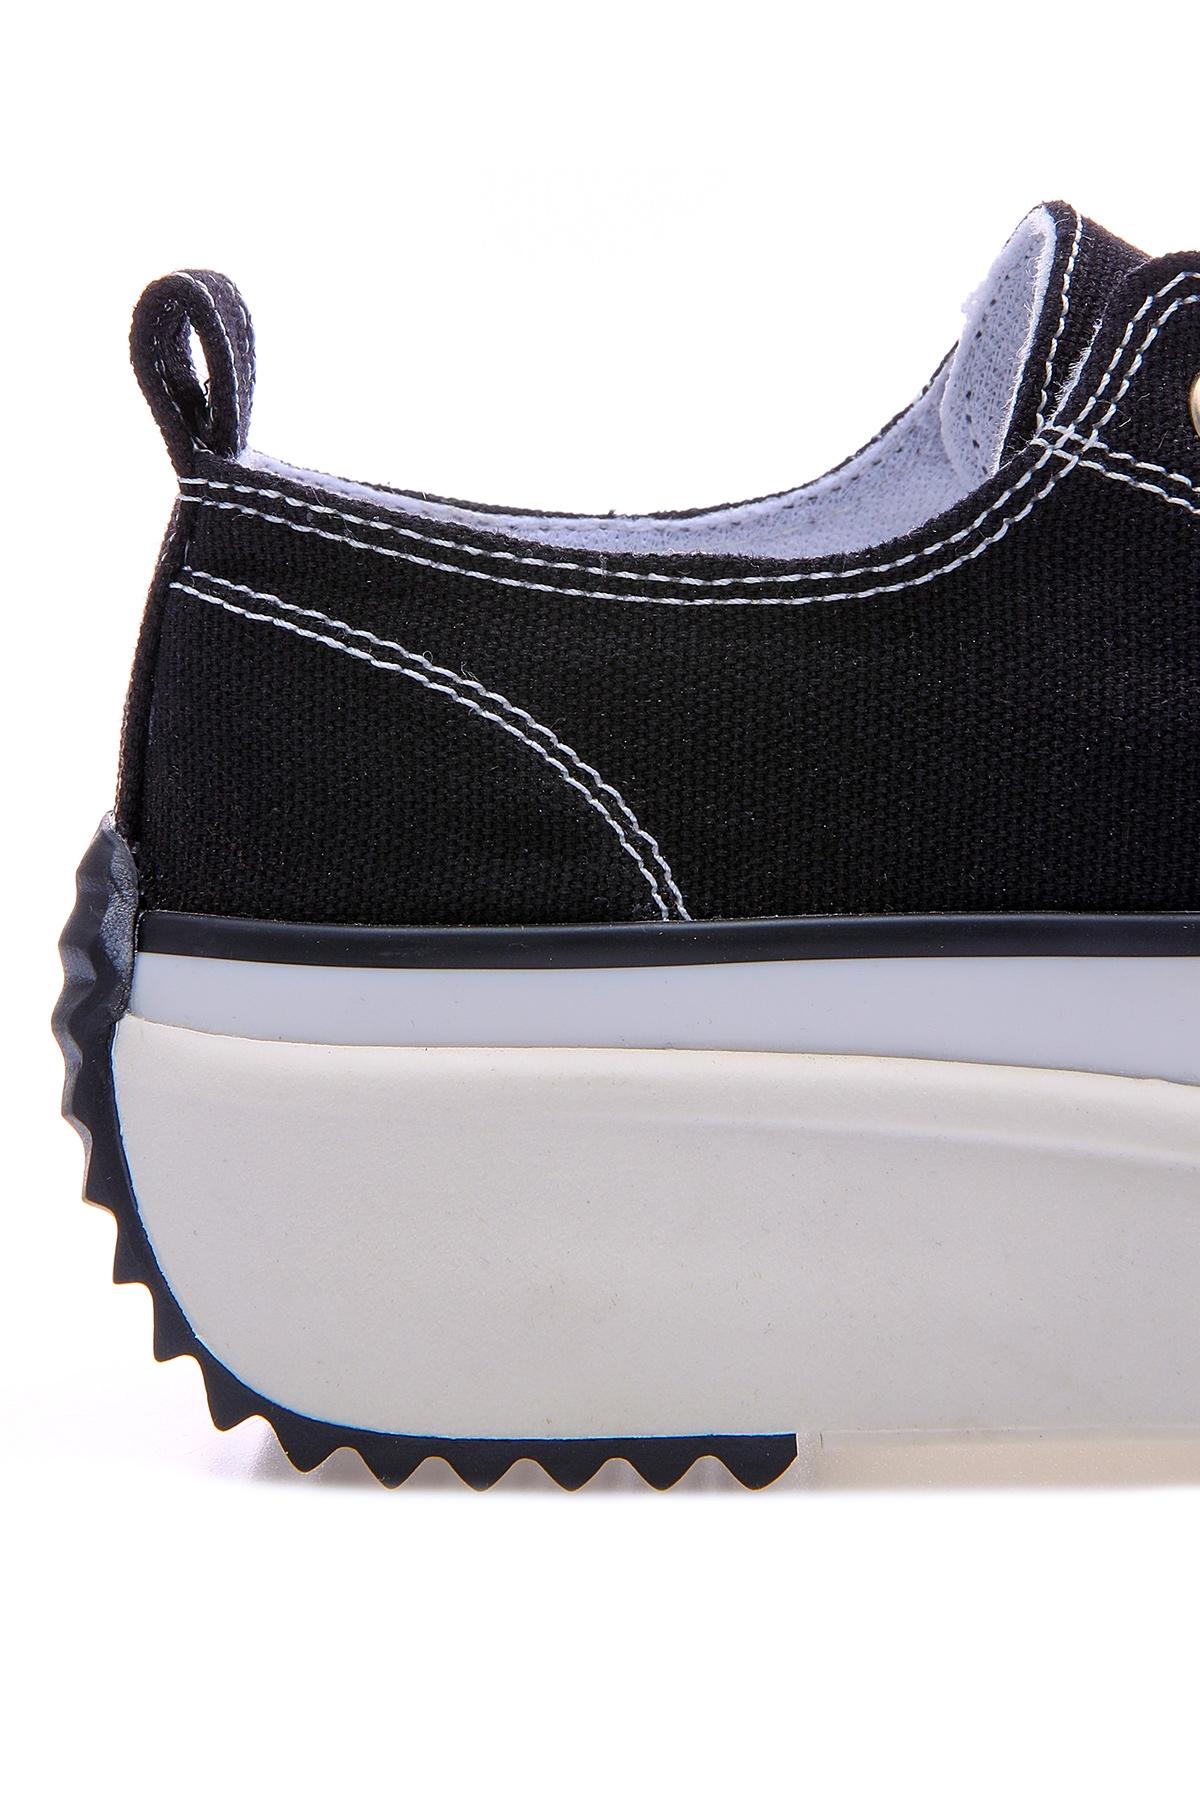 Siyah - Beyaz Bağcıklı Yüksek Taban Günlük Kadın Spor Ayakkabı - 89070